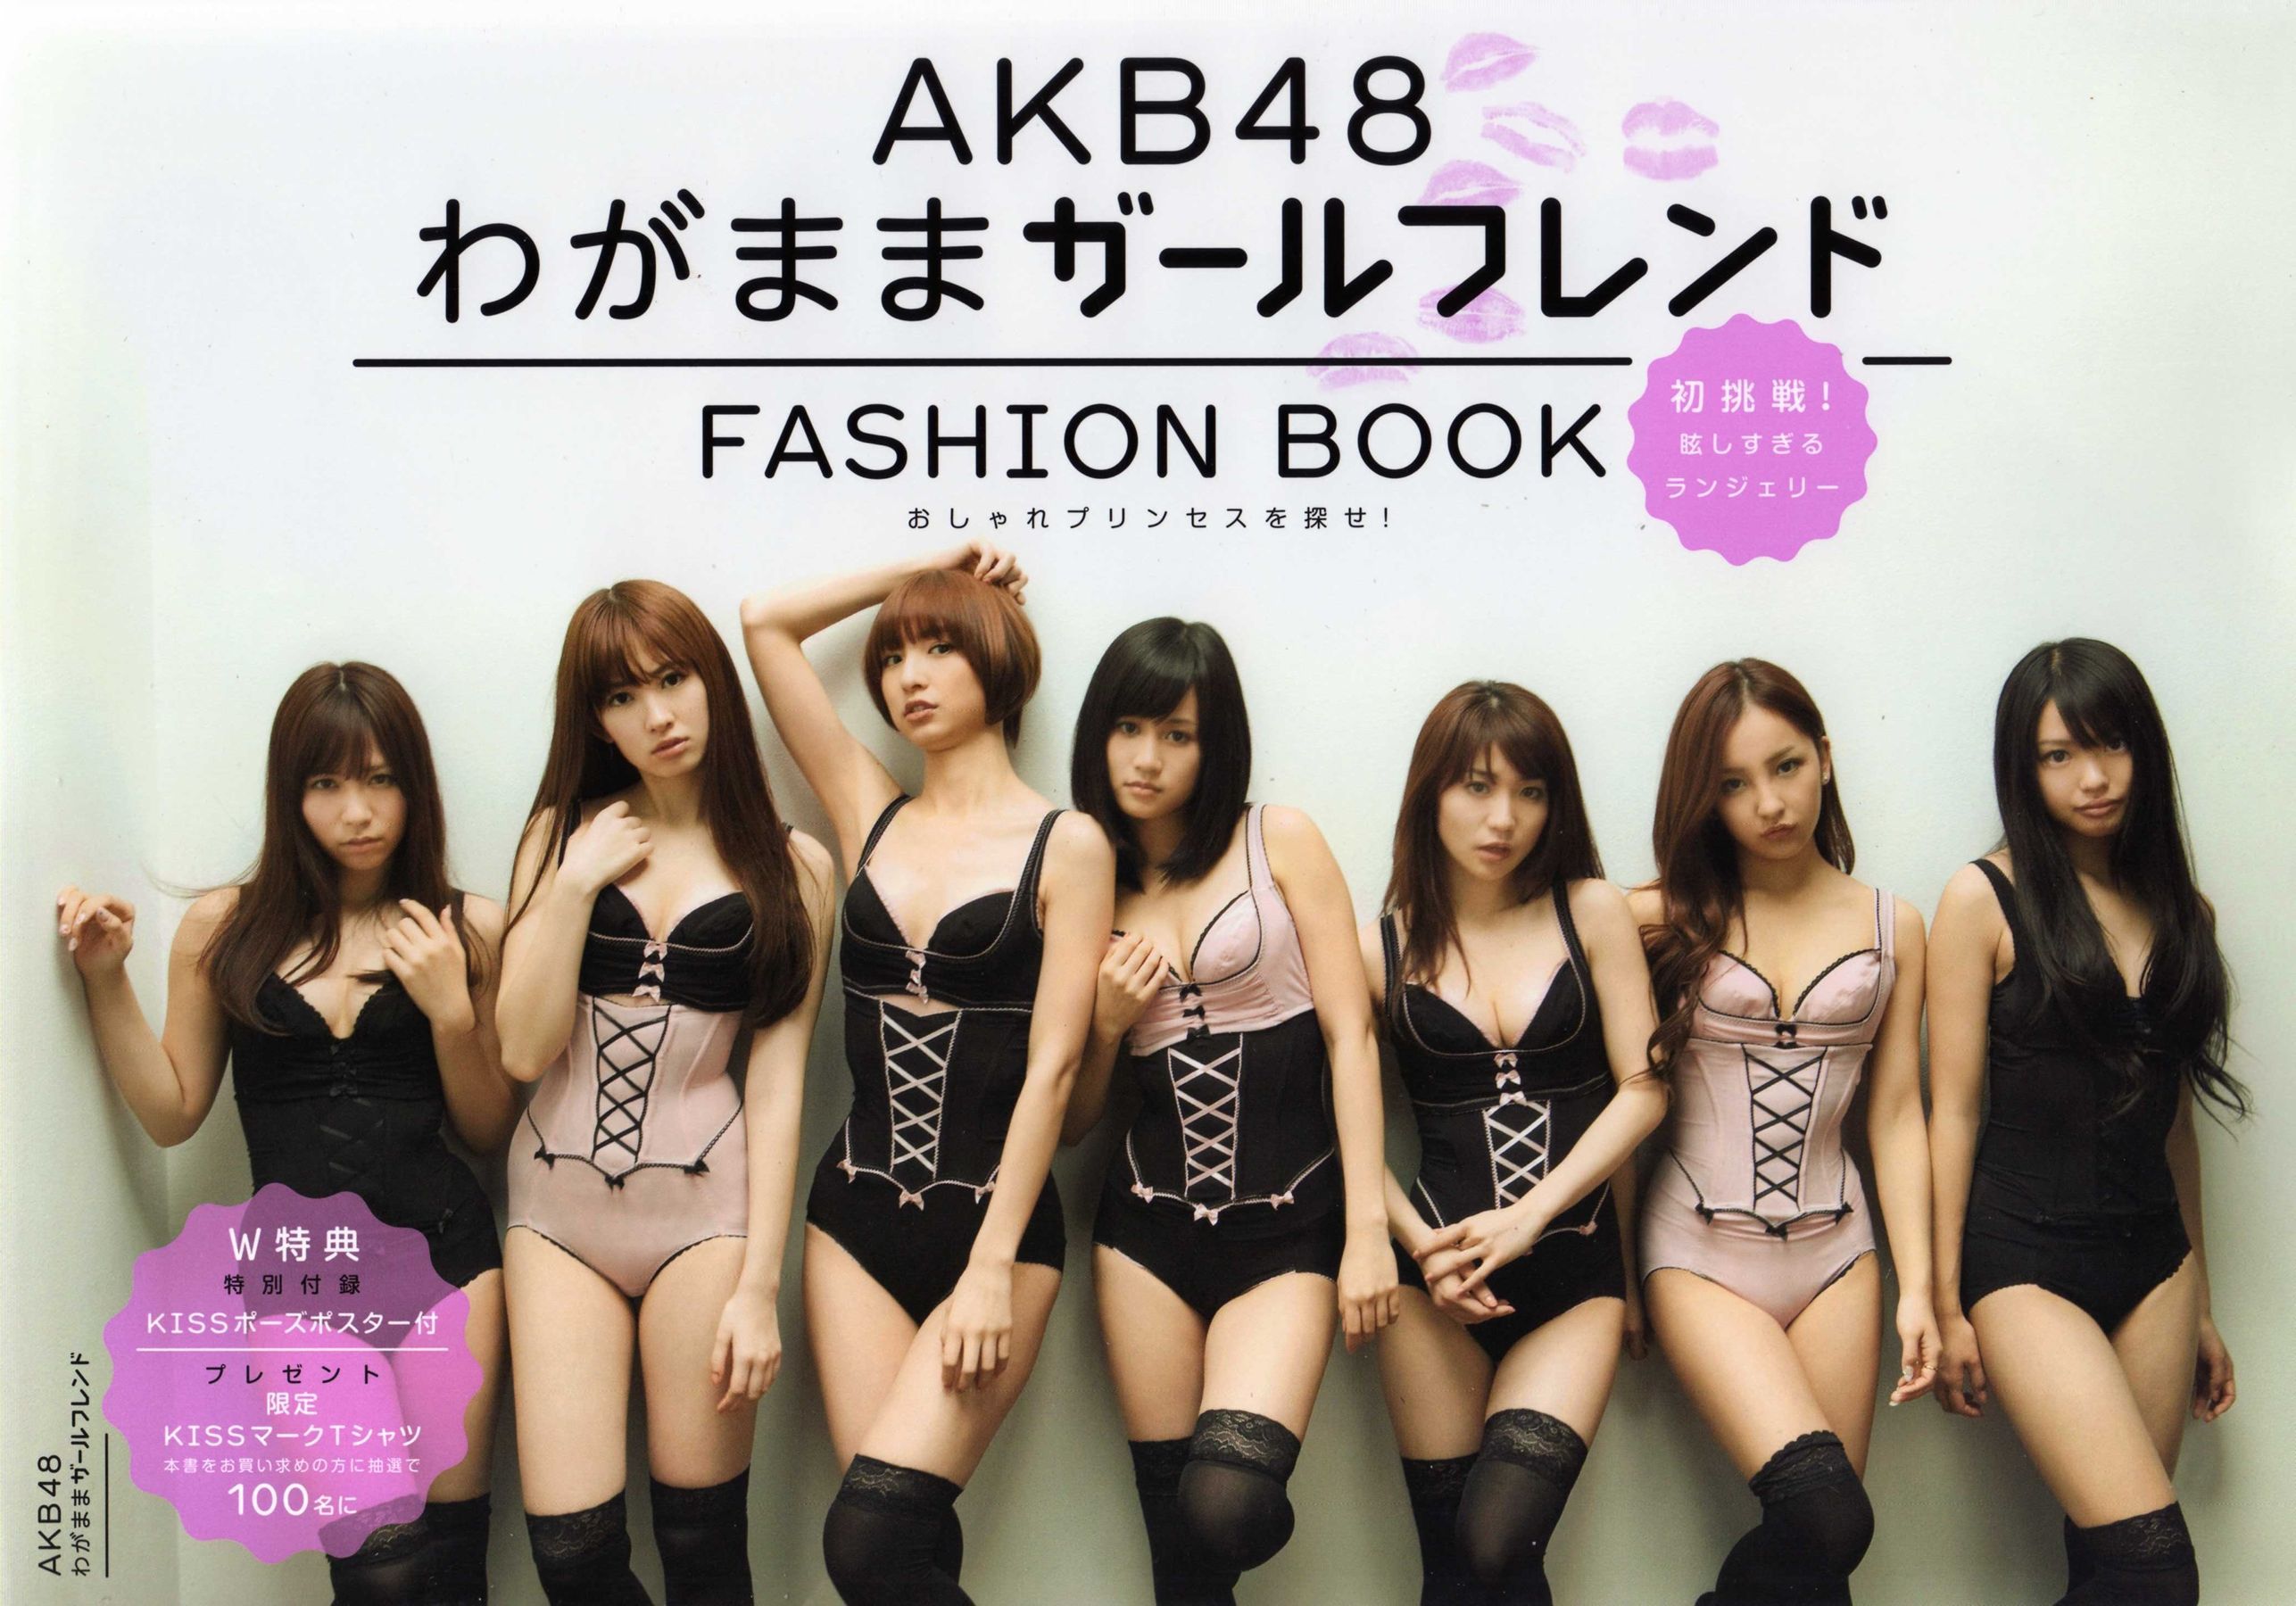 日本AKB48女子组合《2013 Fashion Book内衣秀》